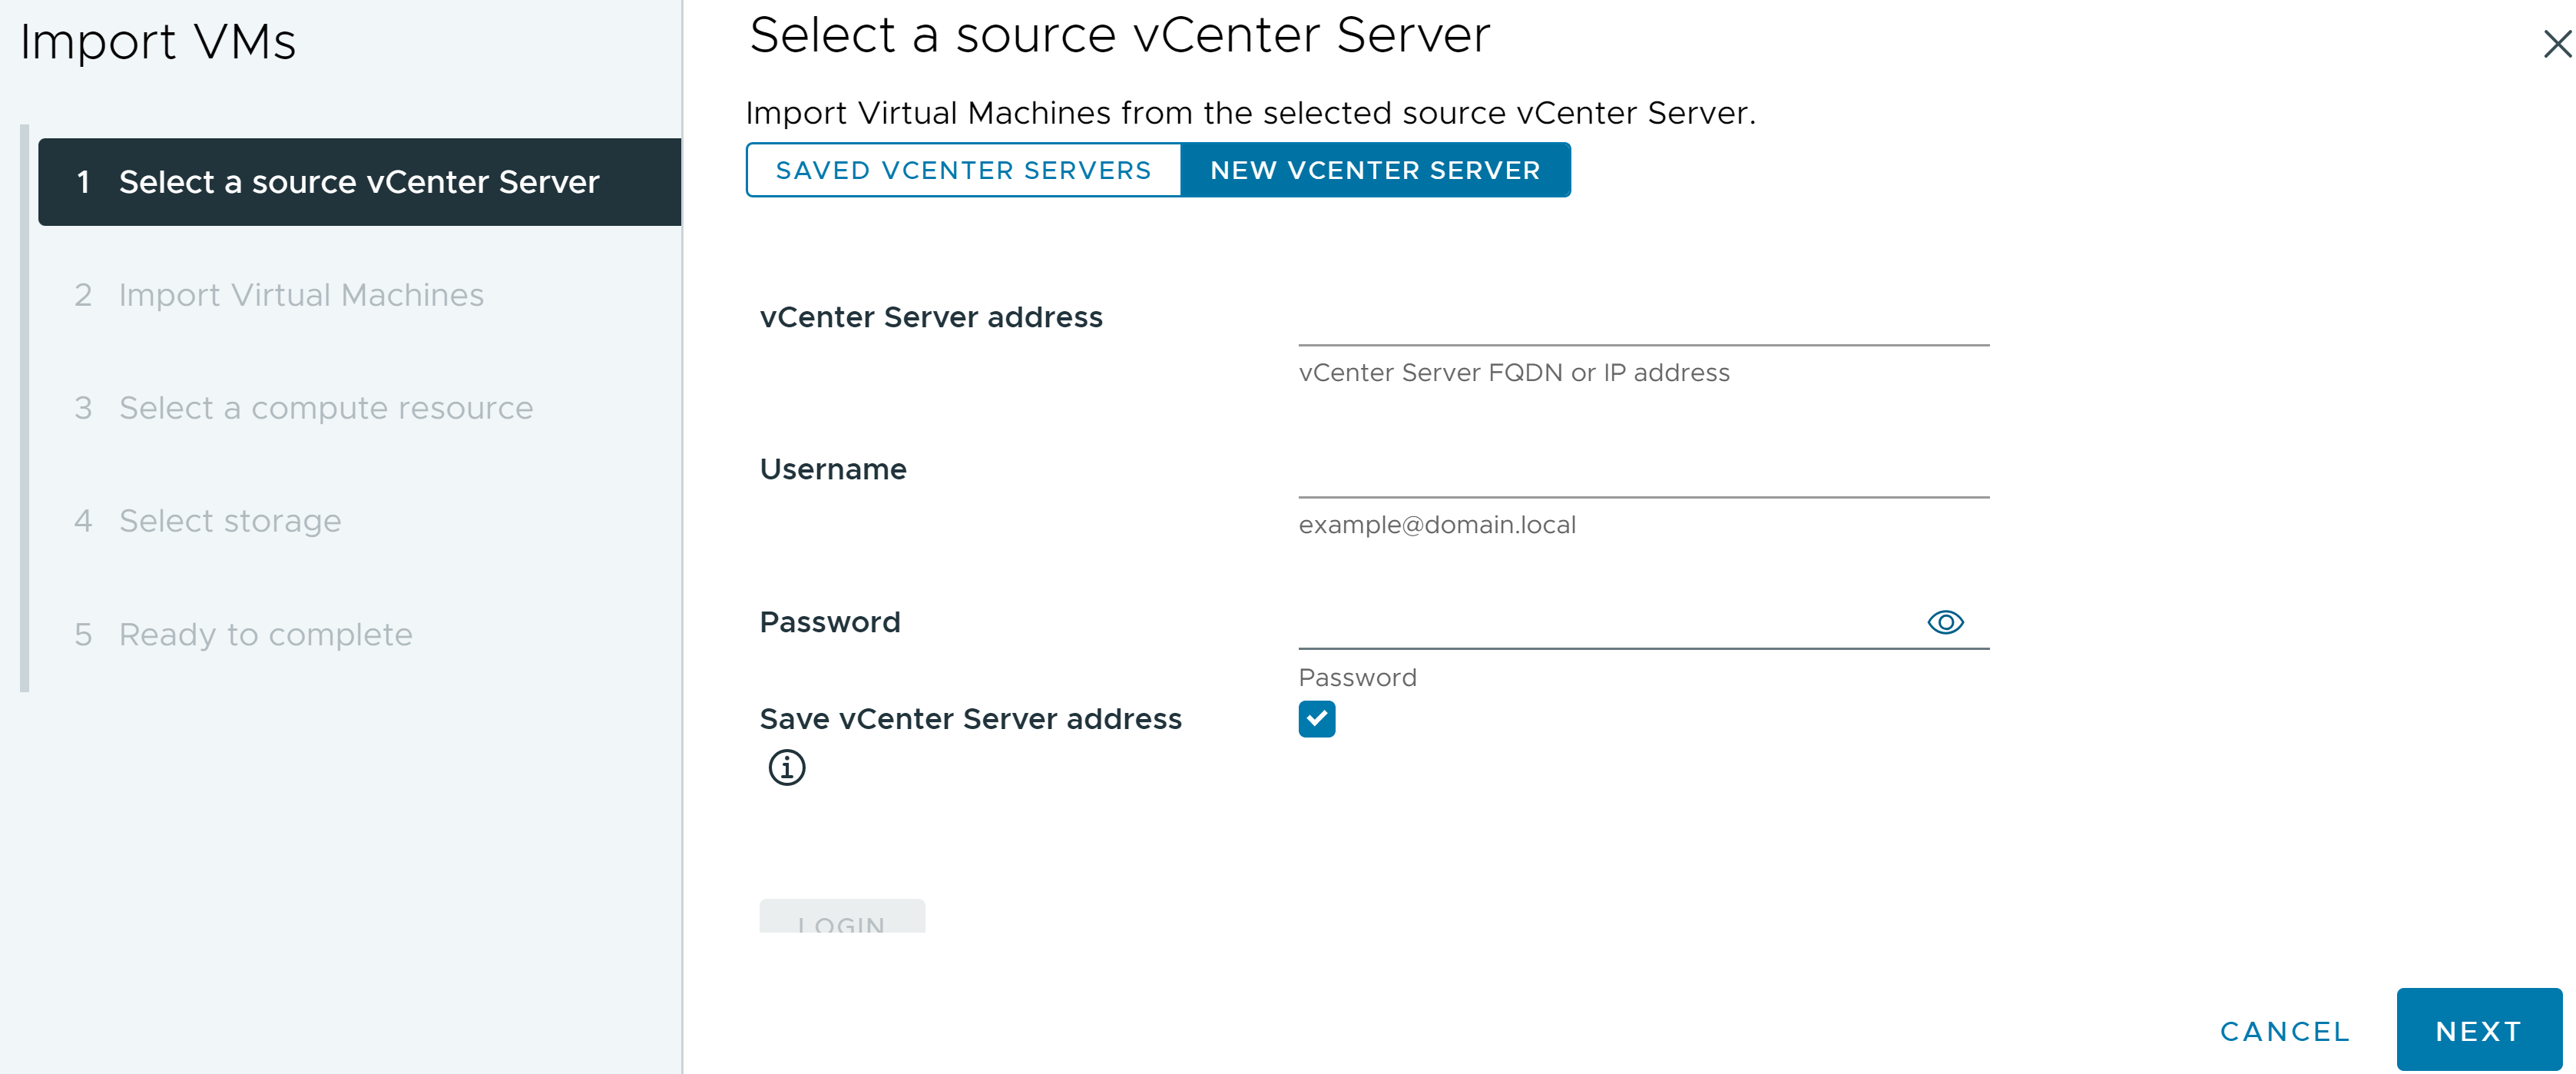 Onglet de l'assistant Importer des VM dans lequel vous entrez les informations d'identification de l'instance source de vCenter Server.